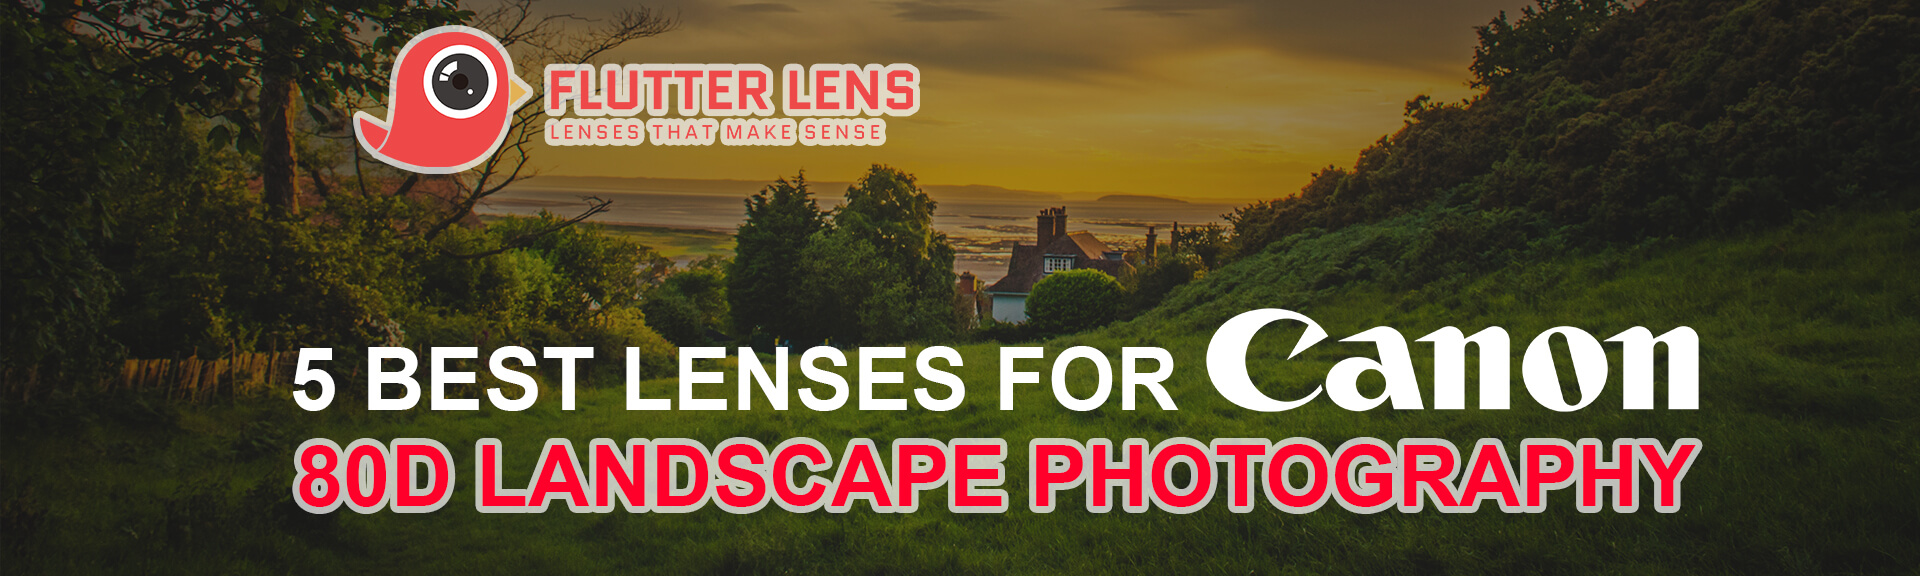 5 Best Lenses for Canon 80D Landscape Photography